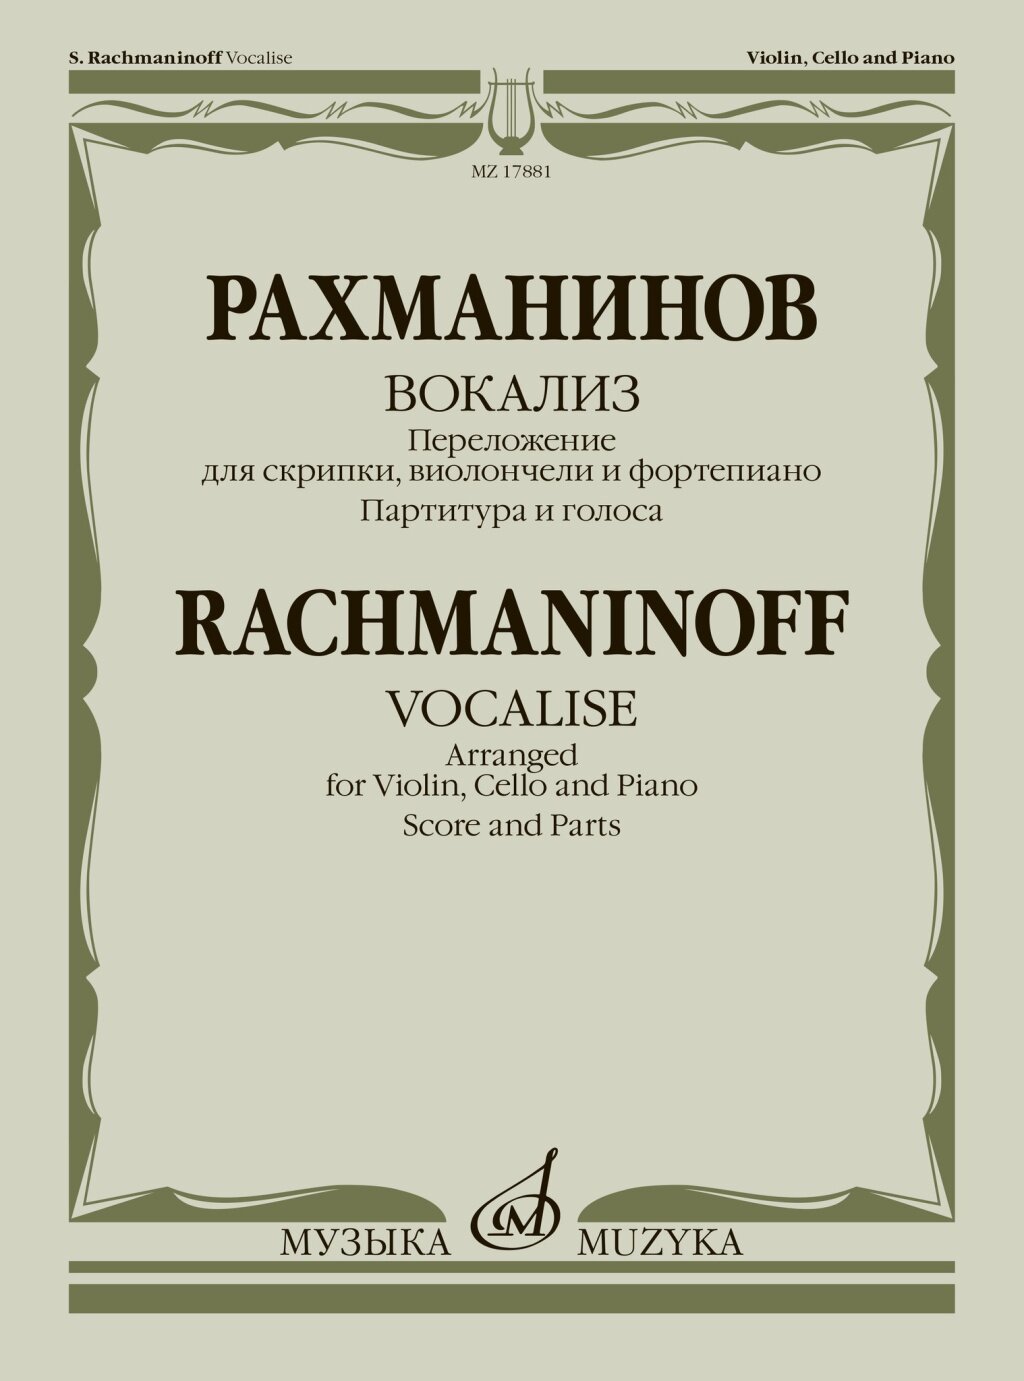 17881МИ Рахманинов С. Вокализ. Переложение для скрипки, виолончели и ф-но, издательство "Музыка"